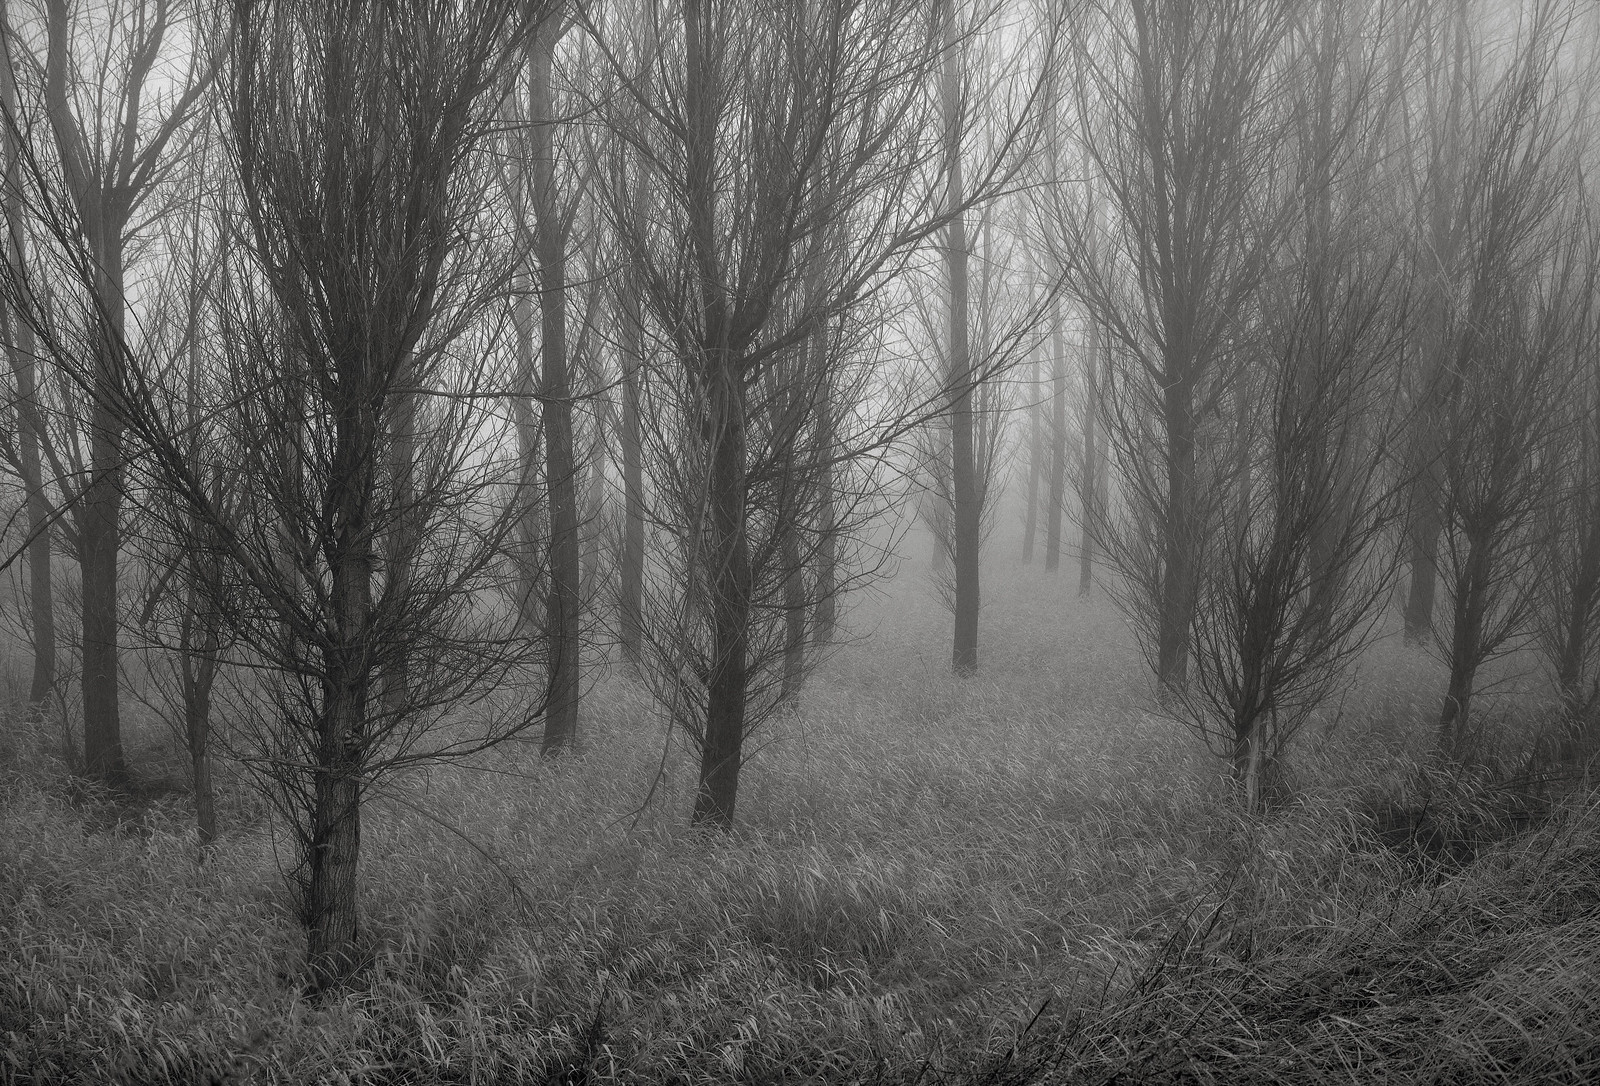 Trees in Fog, Washington | by austin granger